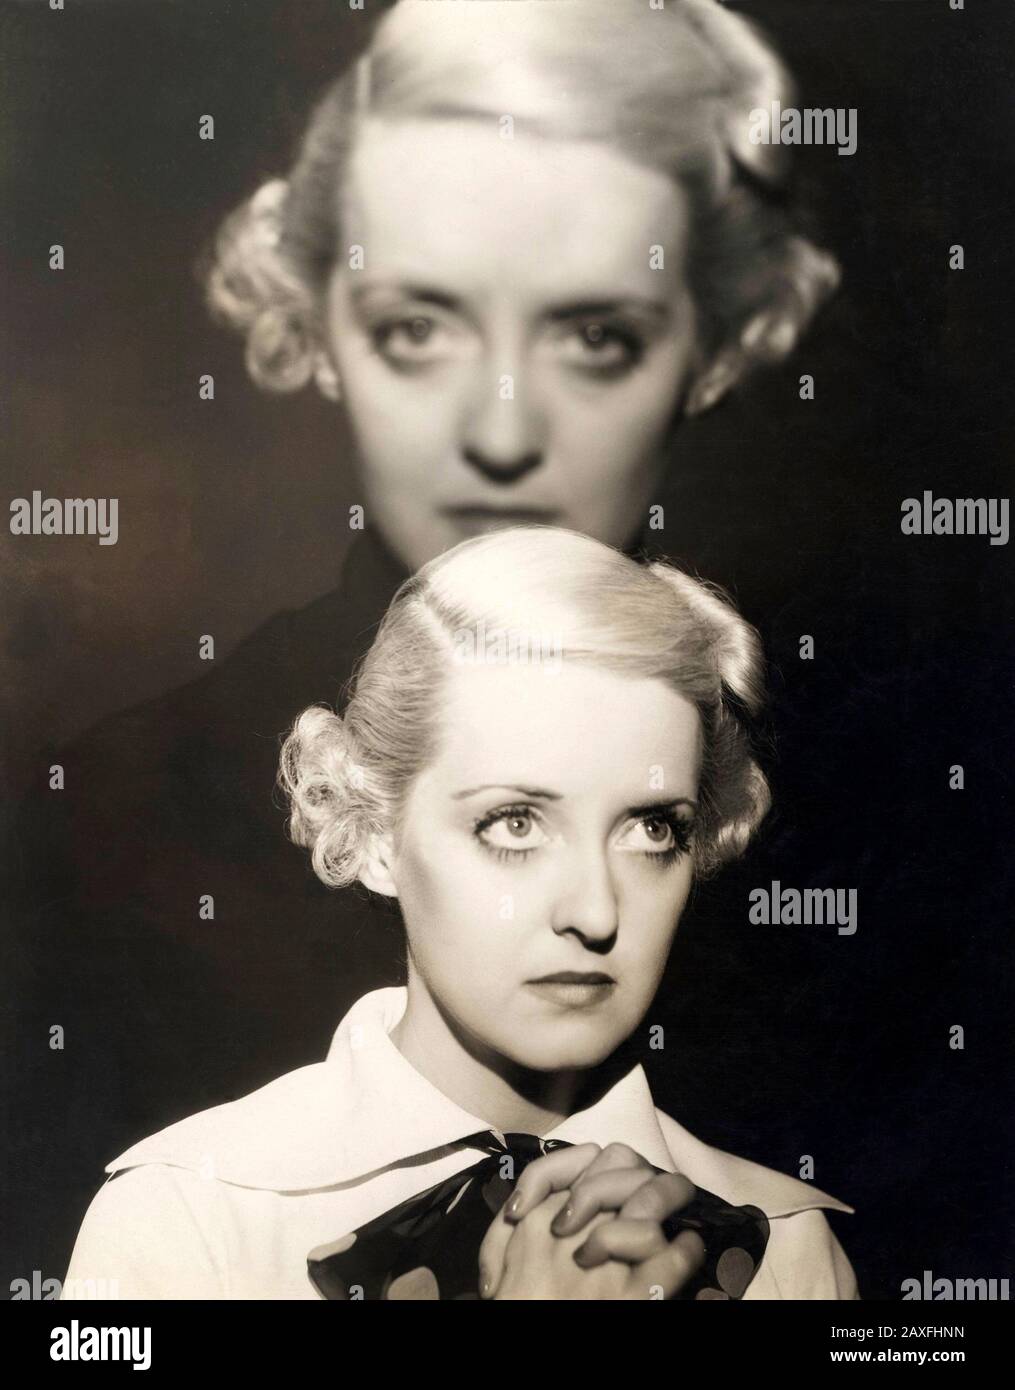 1930's , USA : The movie actress BETTE DAVIS  - FILM DRAMMATICO - CINEMA - portrait - ritratto - bionda - blonde - preghiera - prayer - DIVA - DIVINA - collar - colletto - DRAMA  © Archivio GBB / Stock Photo